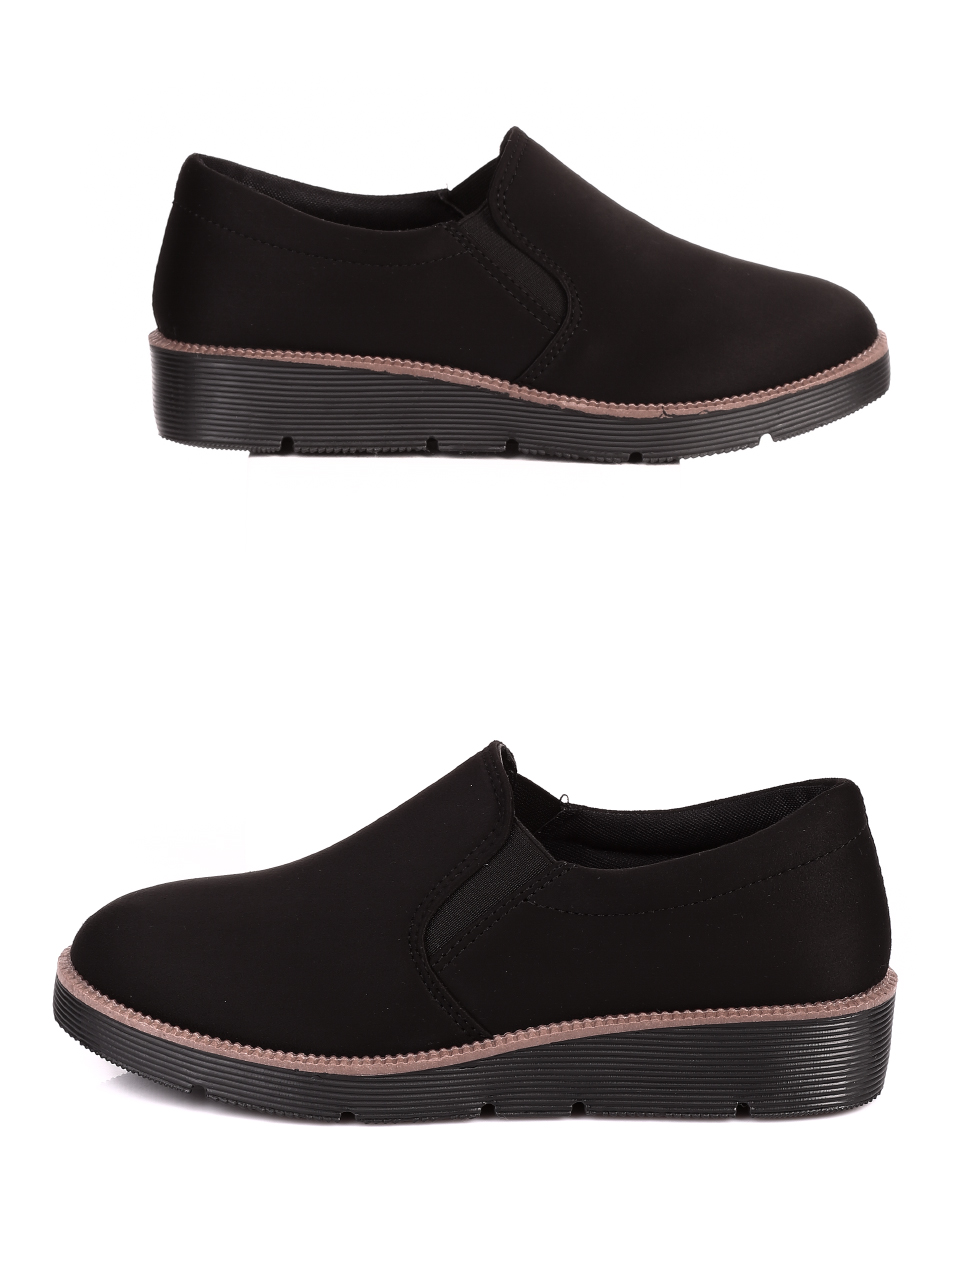 Ежедневни дамски обувки в черно 3U-20614 black mf